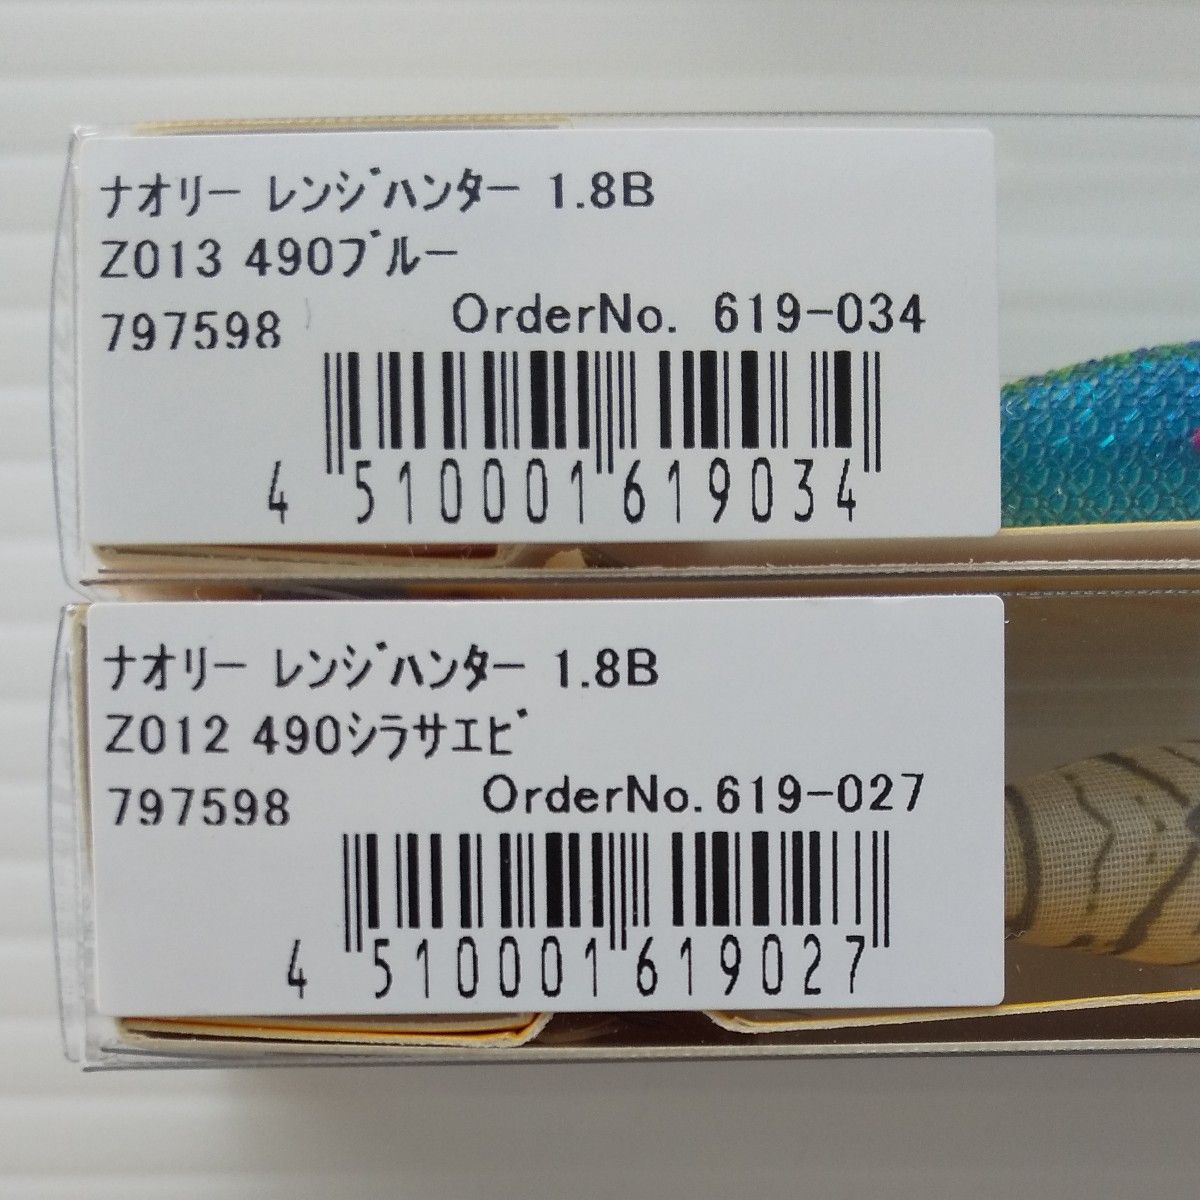 ヤマシタ ナオリー レンジハンター 1.8B 限定カラー 4個セット 新品未開封 490グロー